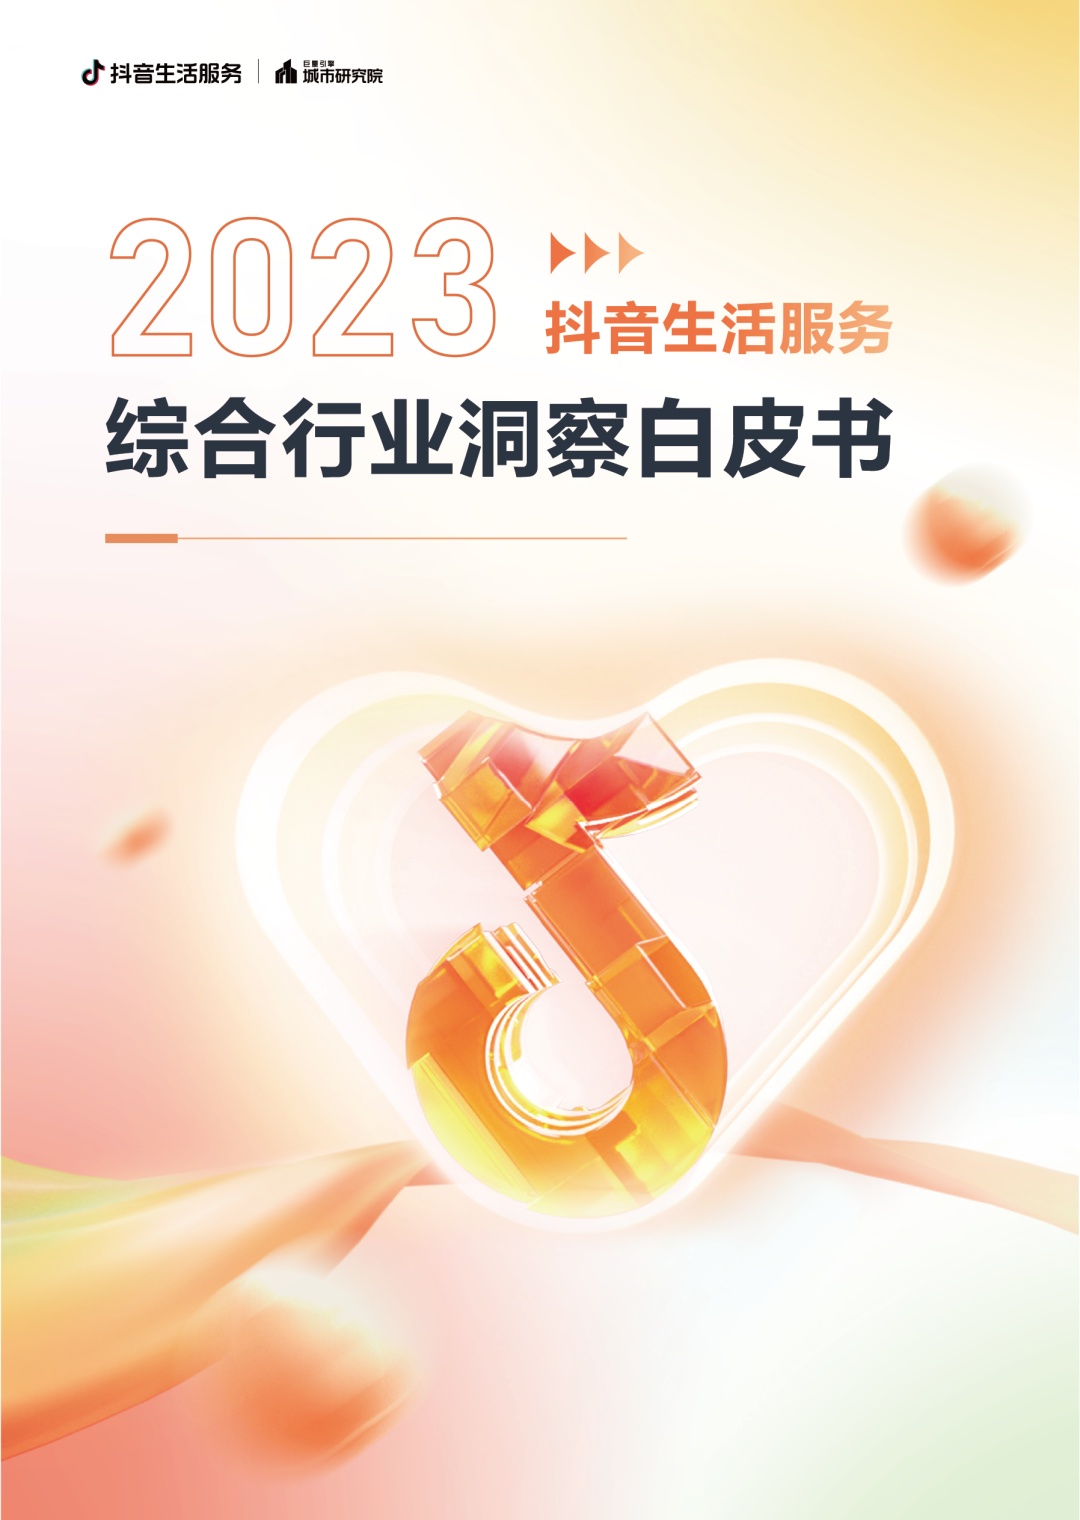 抖音生活服务发布《2023抖音生活服务综合行业洞察白皮书》